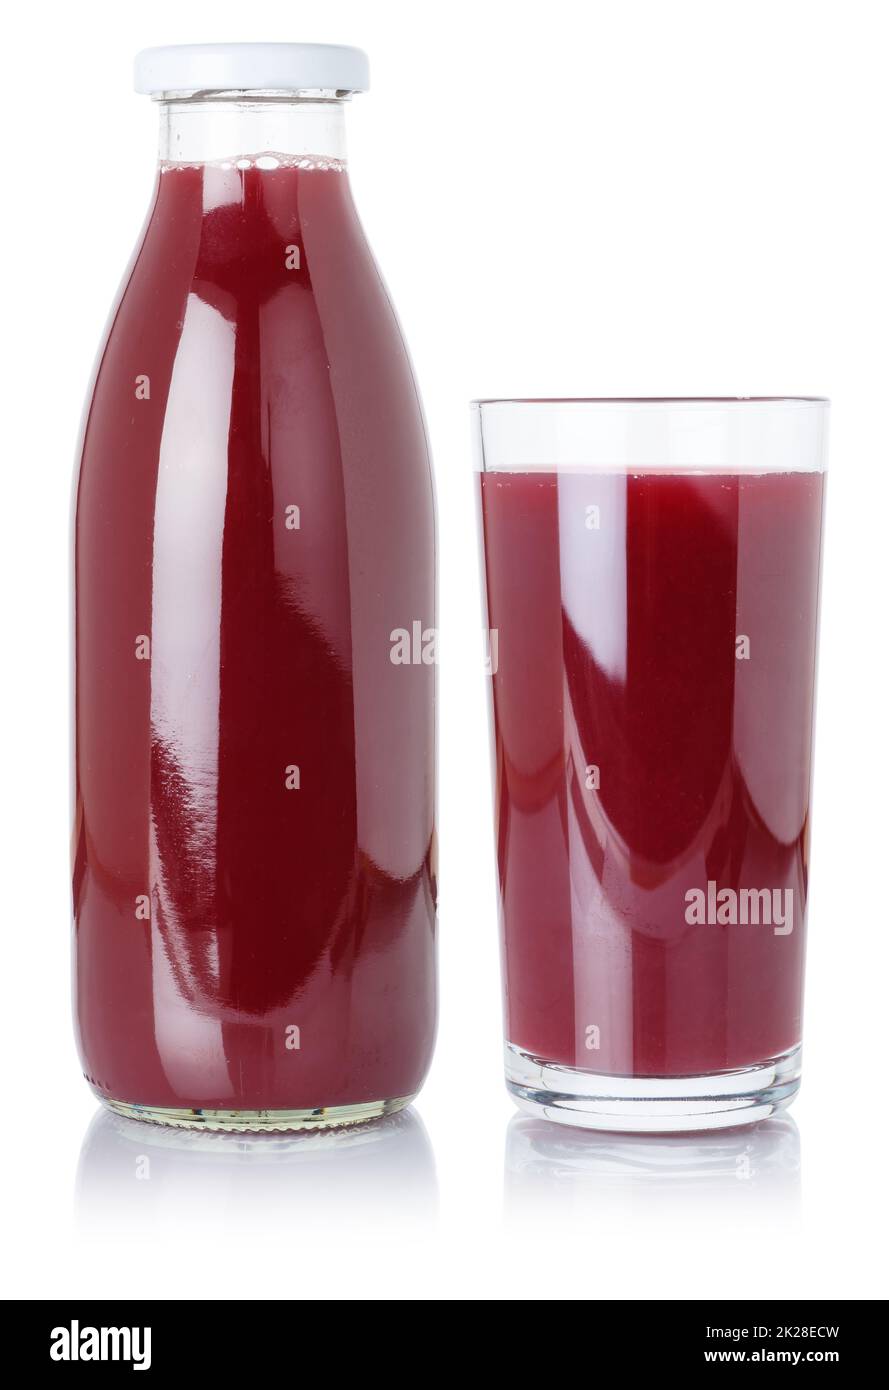 Beeren-Smoothie-Fruchtsaft Trinken Sie Wildbeeren in einer Flasche und ein Glas, isoliert auf Weiß Stockfoto